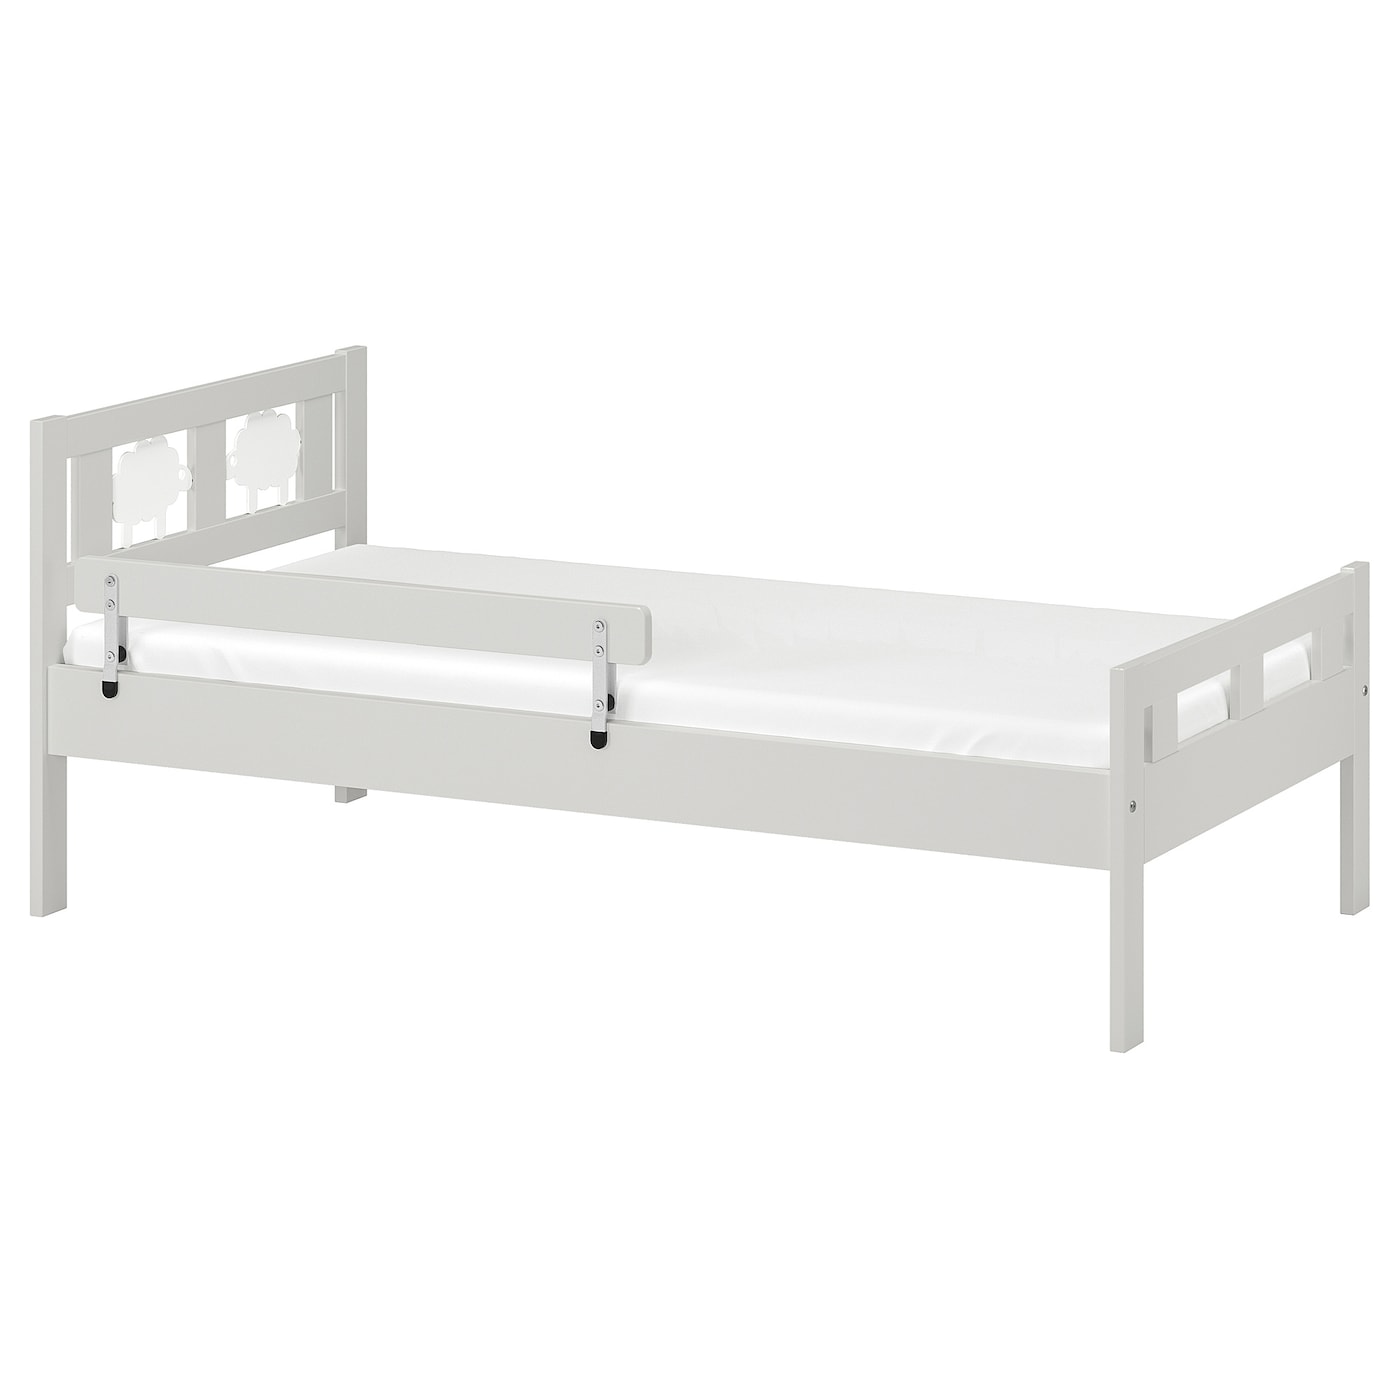 Каркас кровати с реечным дном - IKEA KRITTER, 160х70 см, серый, КРИТТЕР ИКЕА